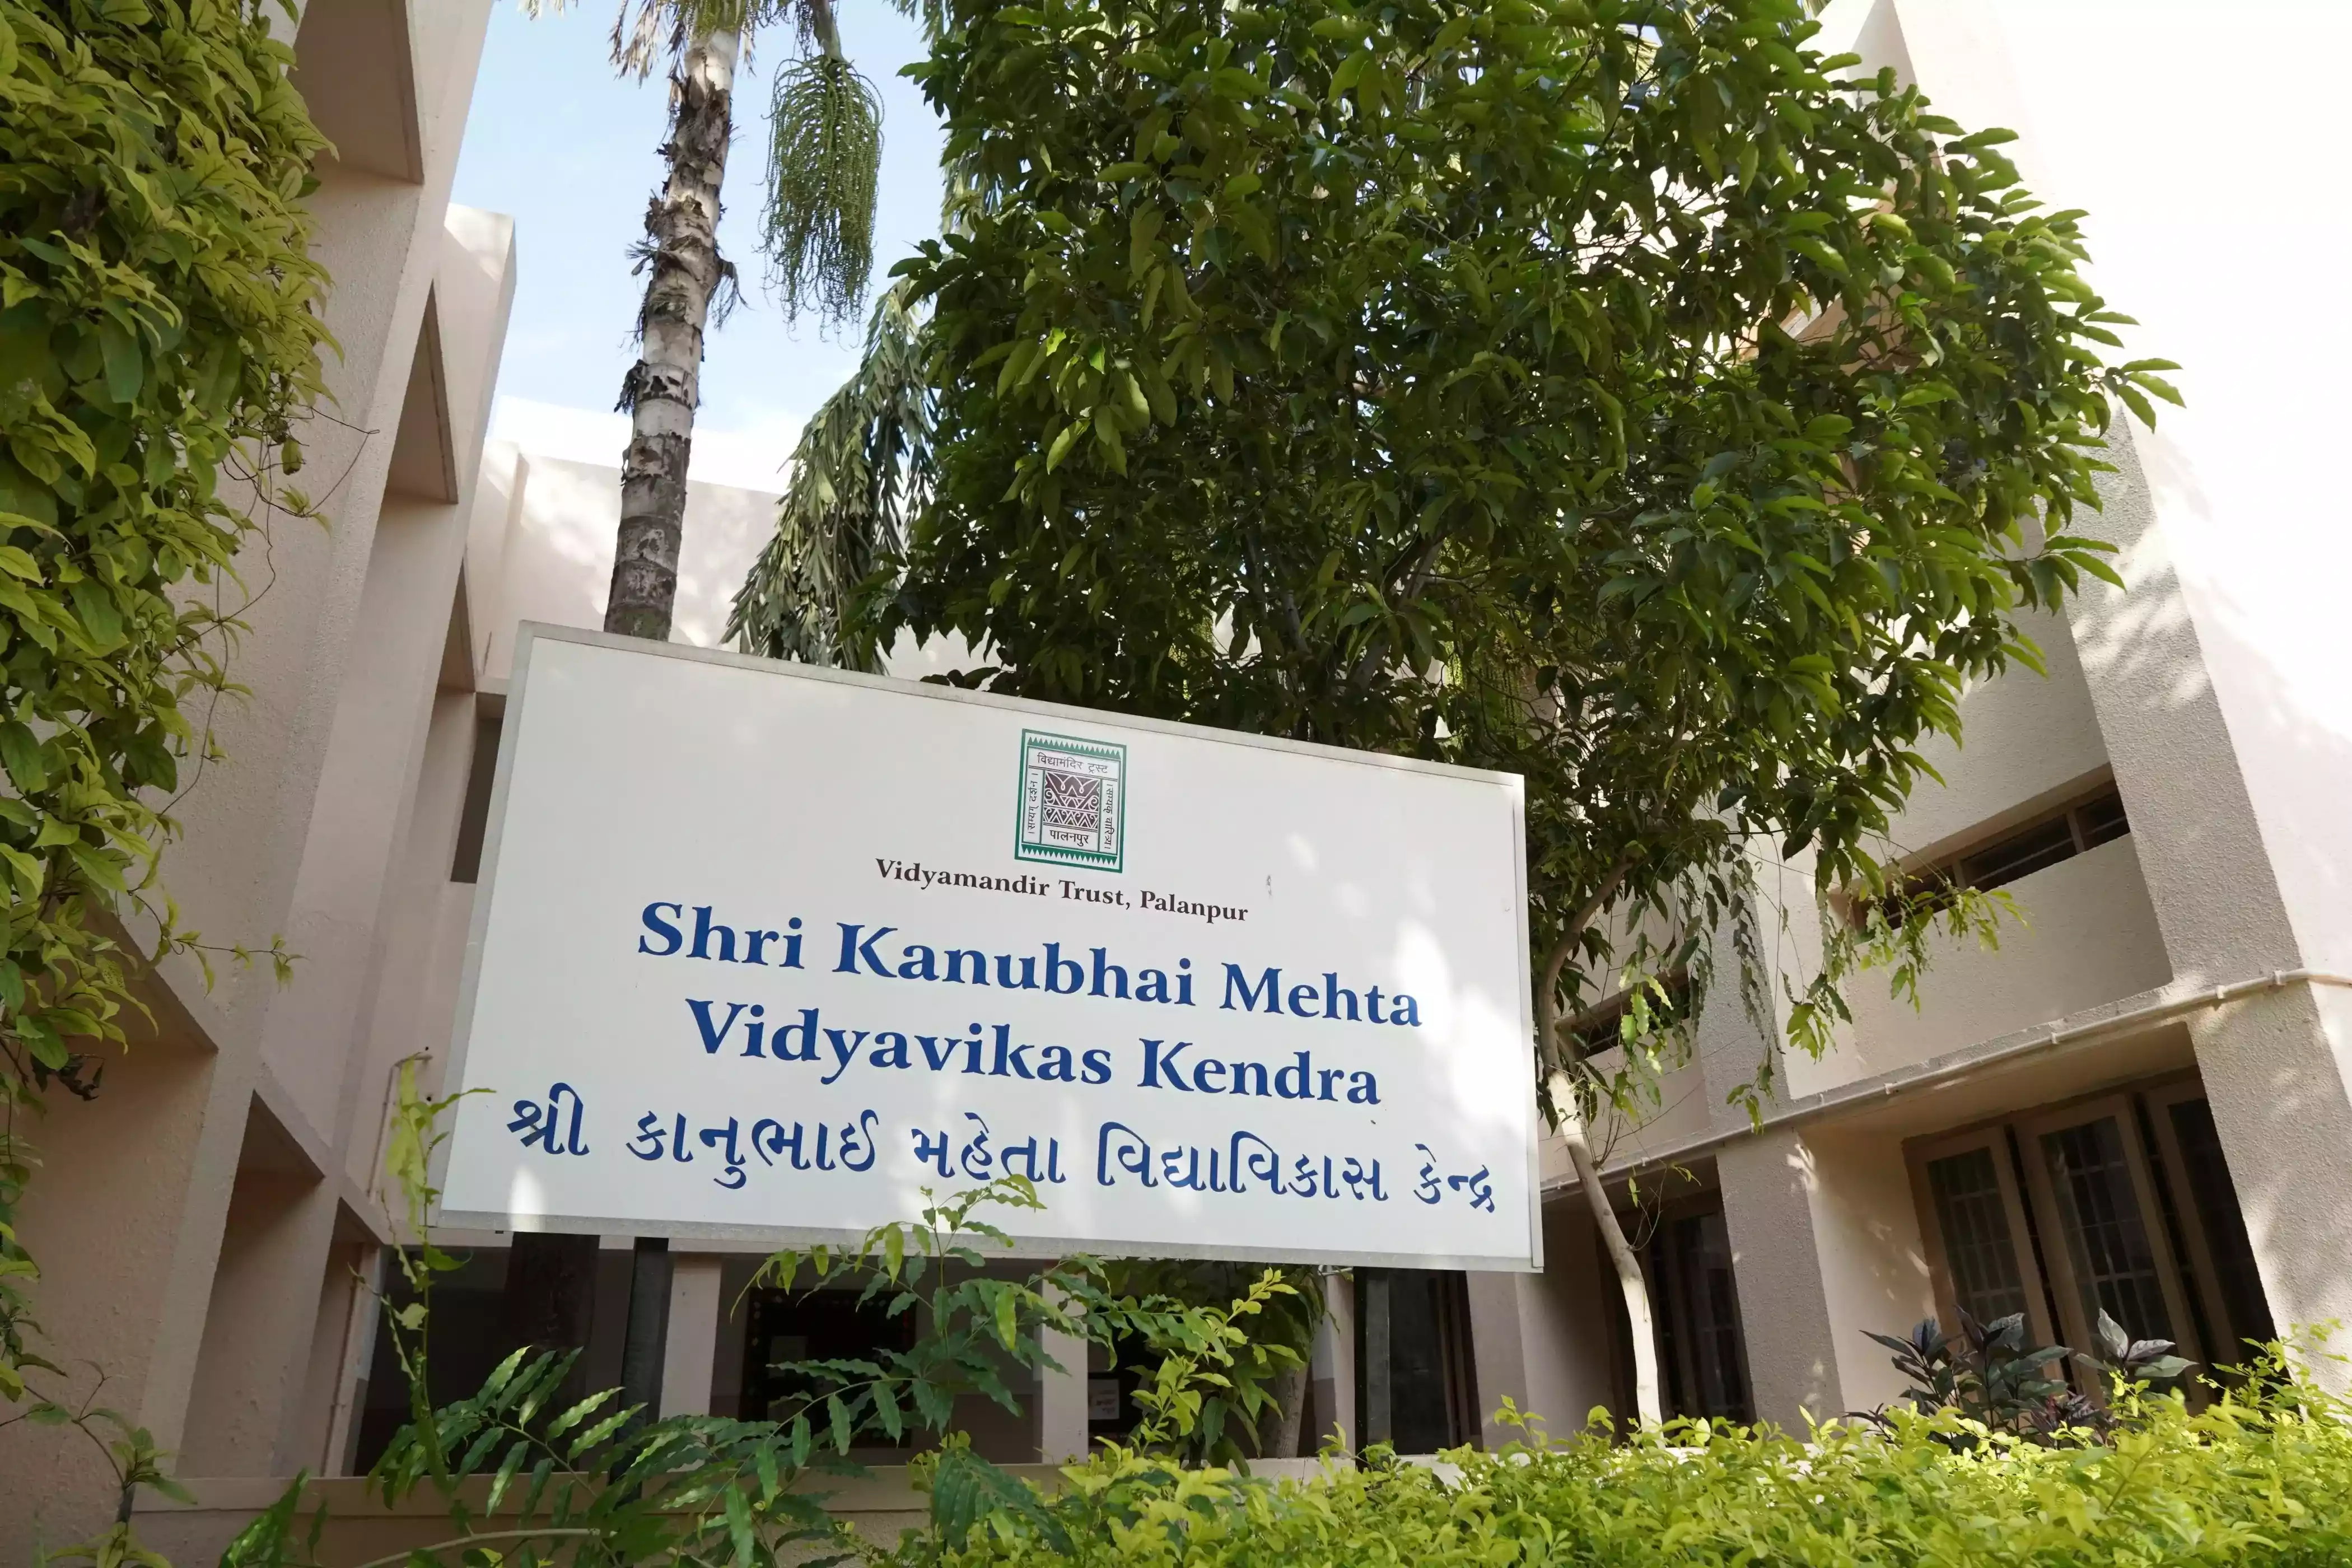 Shri Kanubhai Mehta Vidya Vikas Kendra - Building Photo